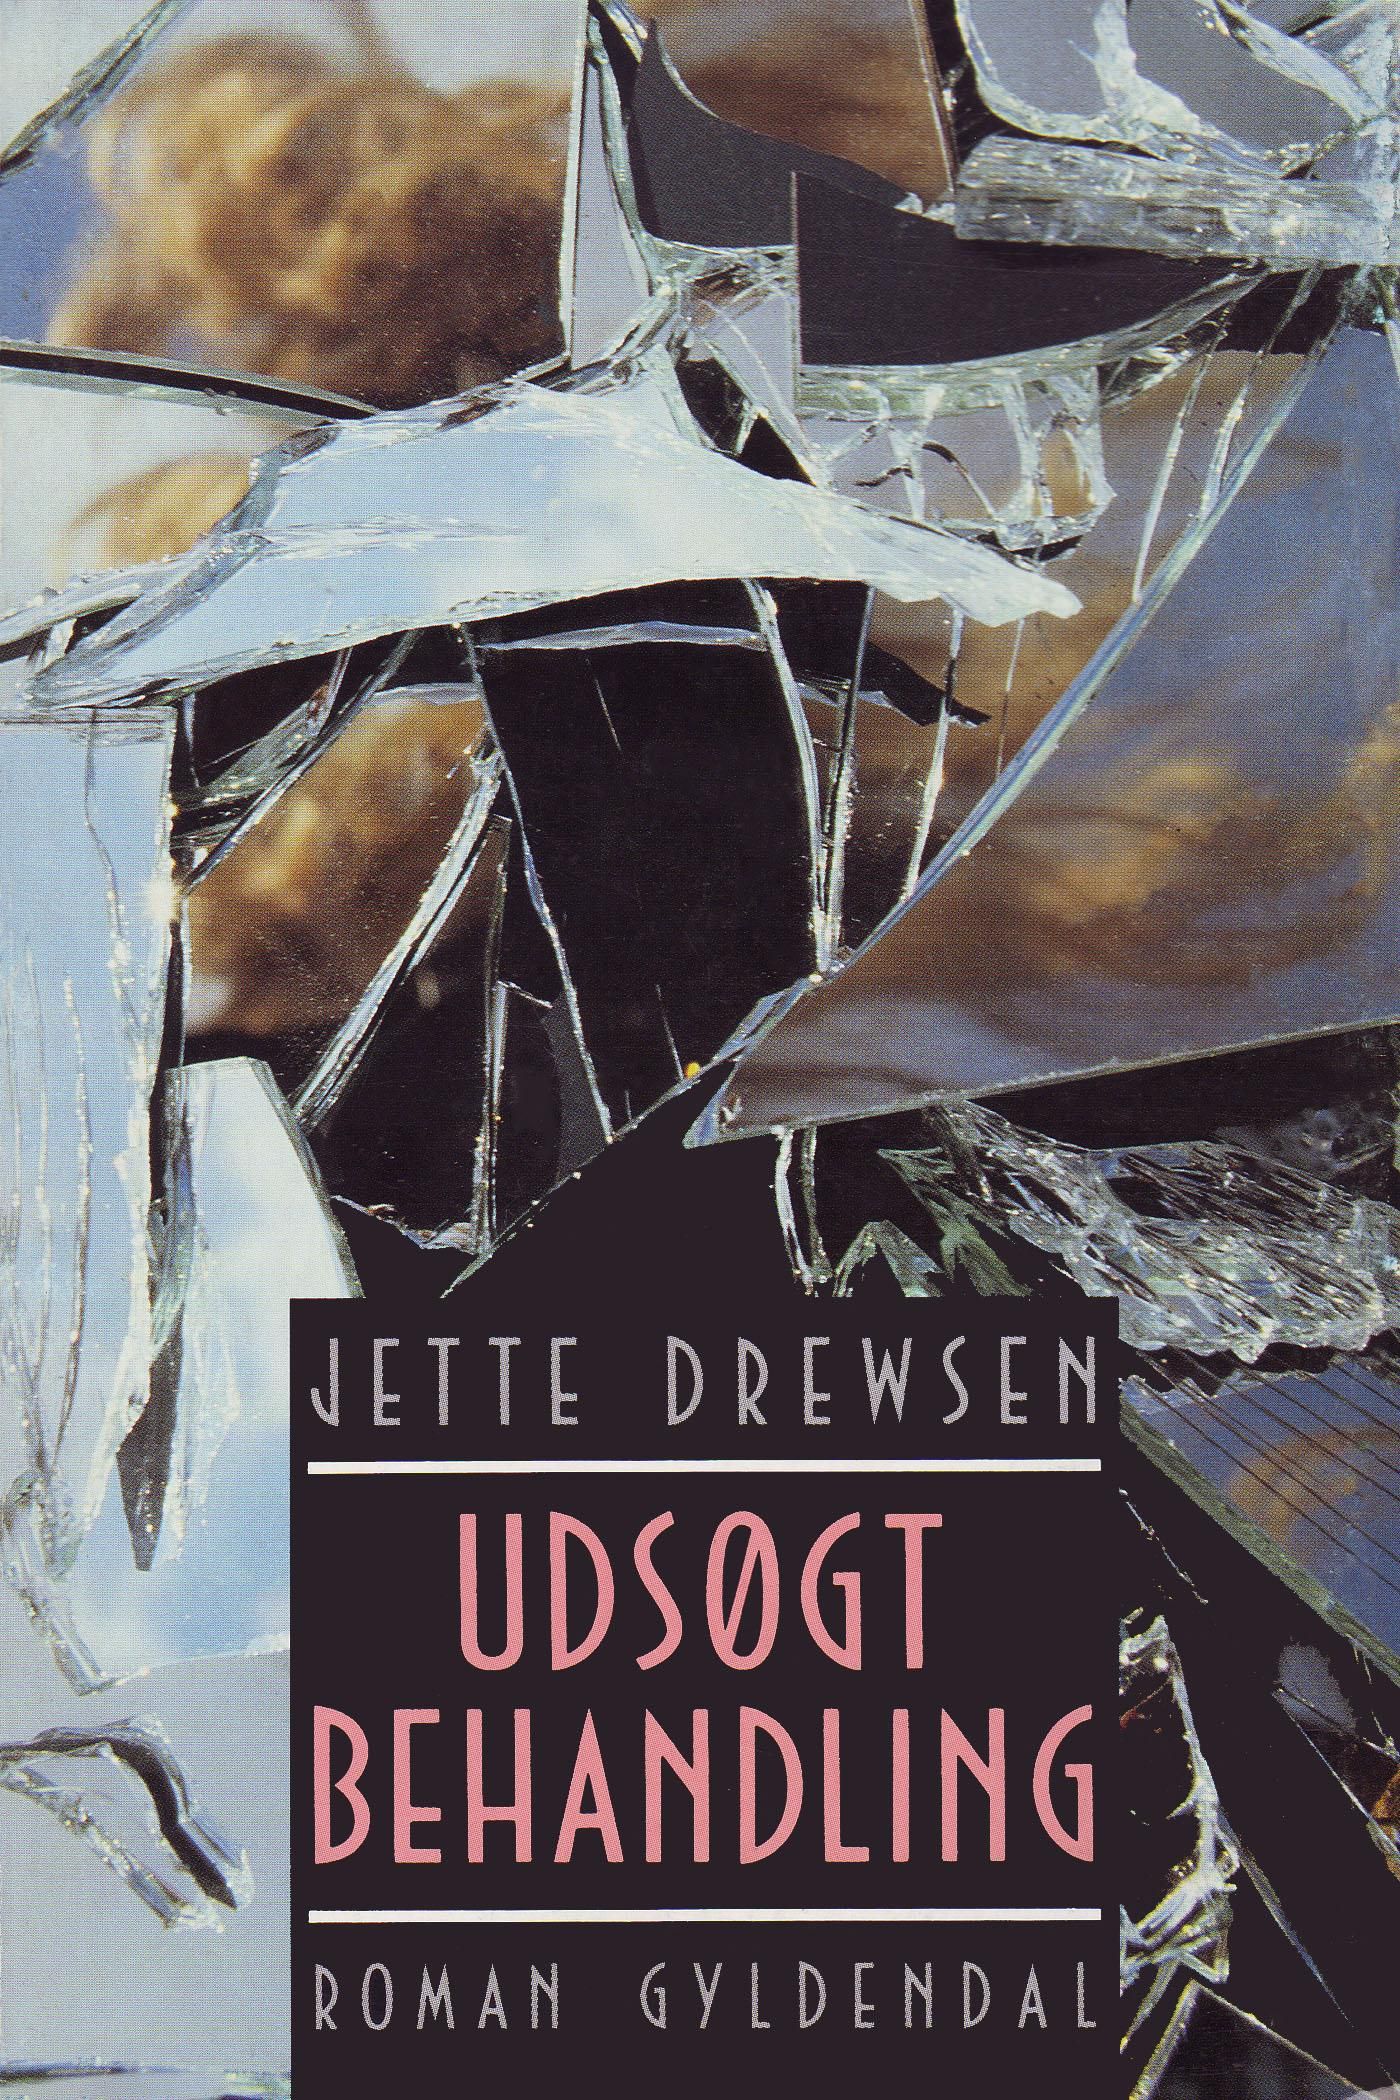 Udsøgt behandling, e-bog af Jette Drewsen